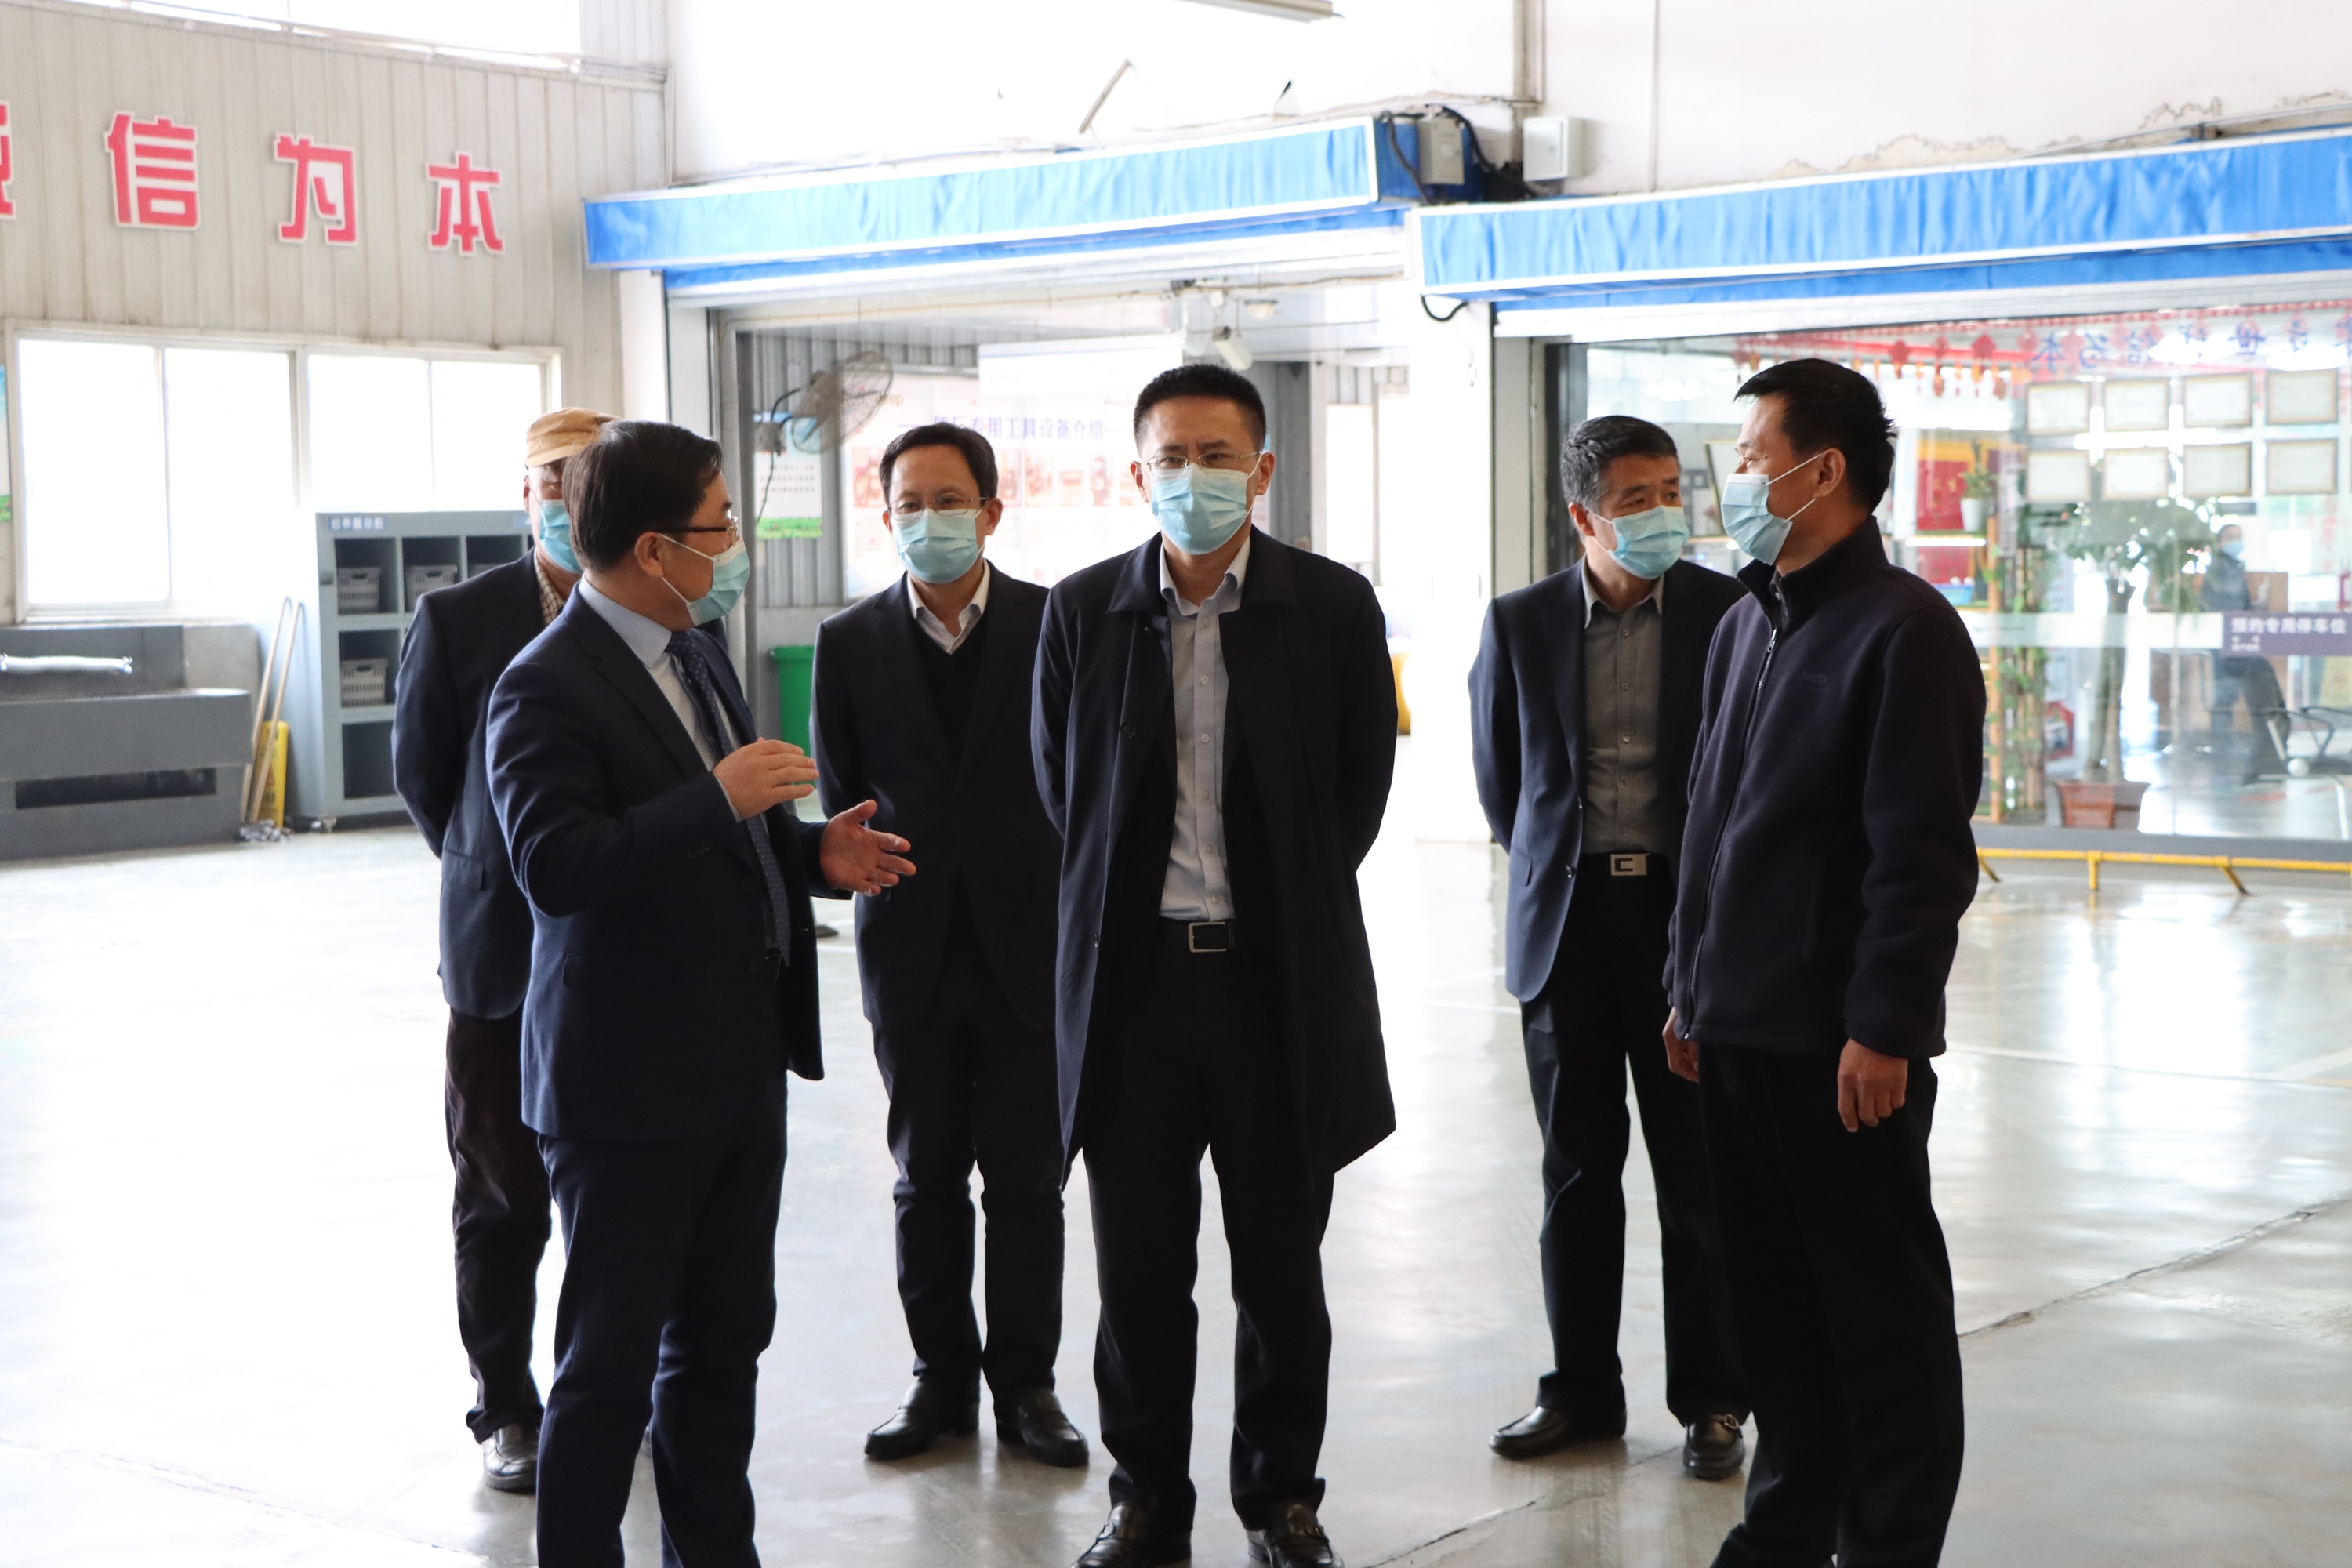 w88win集团总裁任鹤年到古城园区检查疫情防控和宁静生产事情